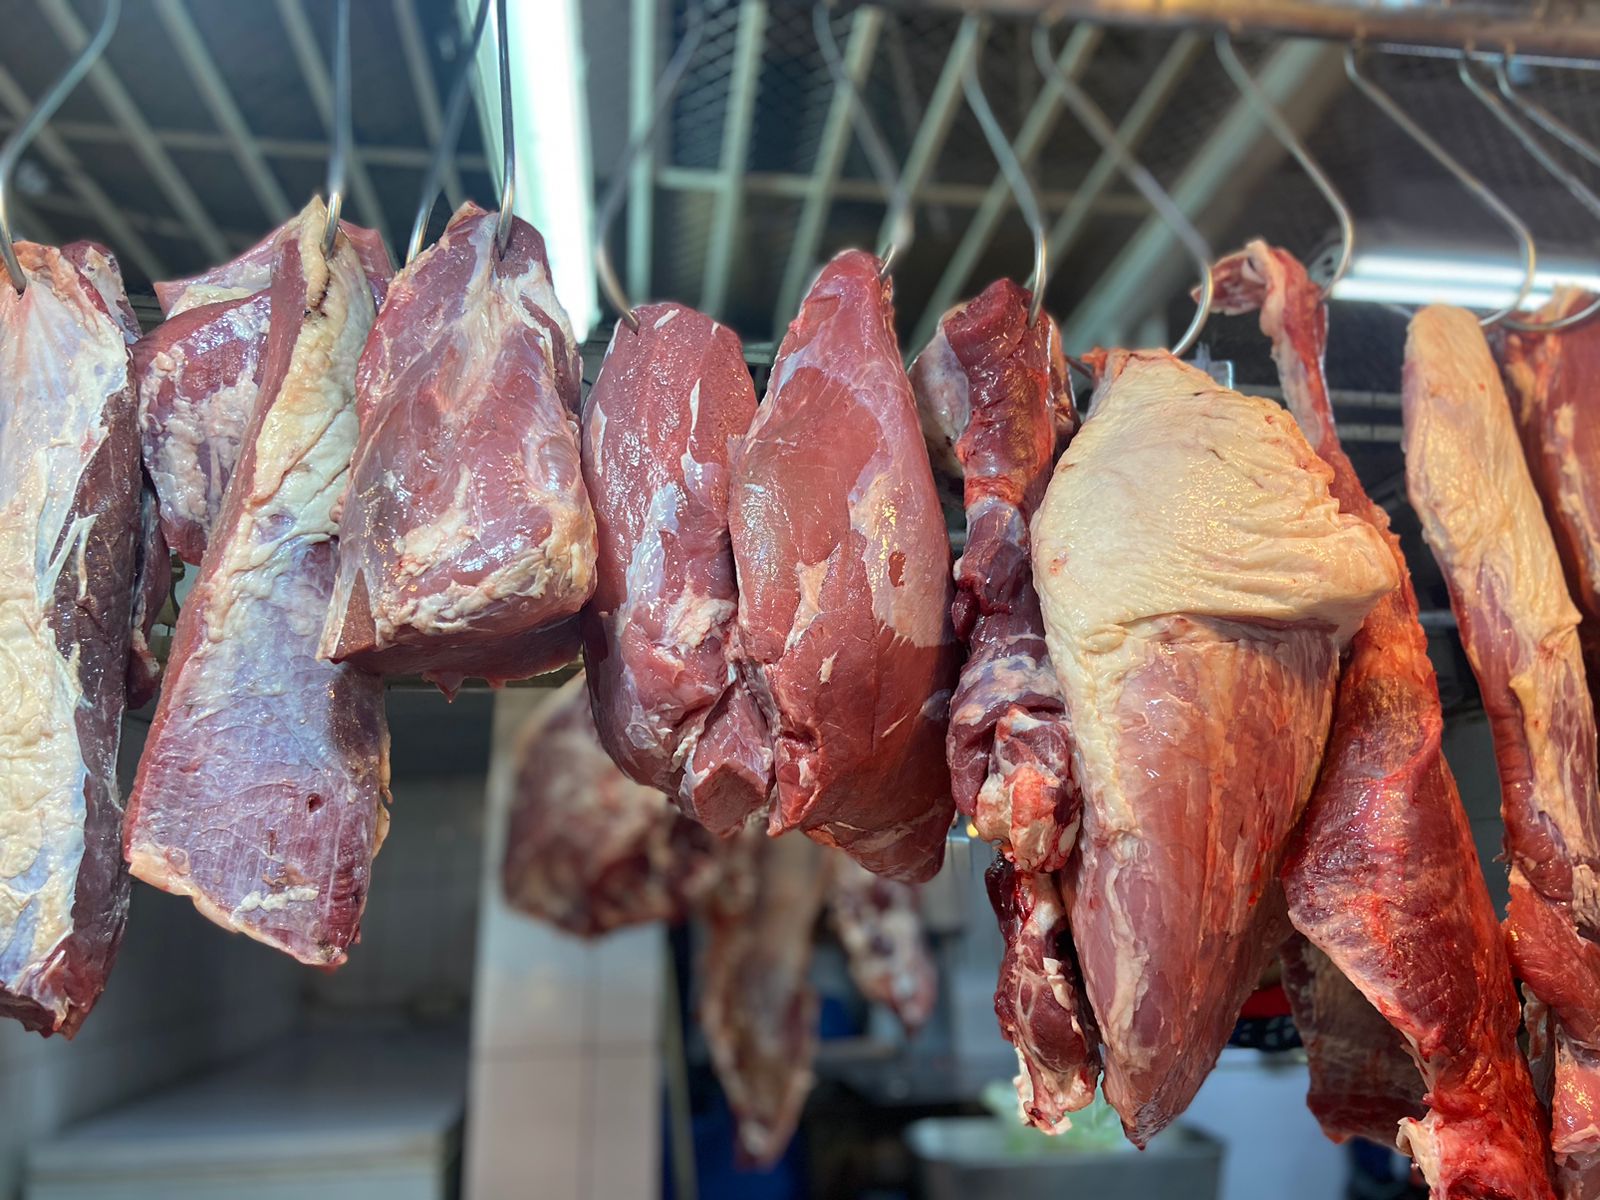 Ganaderos señalan que no han incrementado el precio de la carne de ganado en pie, mientras abastecedores del Mercado Central señalan que los expendedores causan rumor de alza al precio de la carne. (Foto Prensa Libre: Paula Ozaeta).